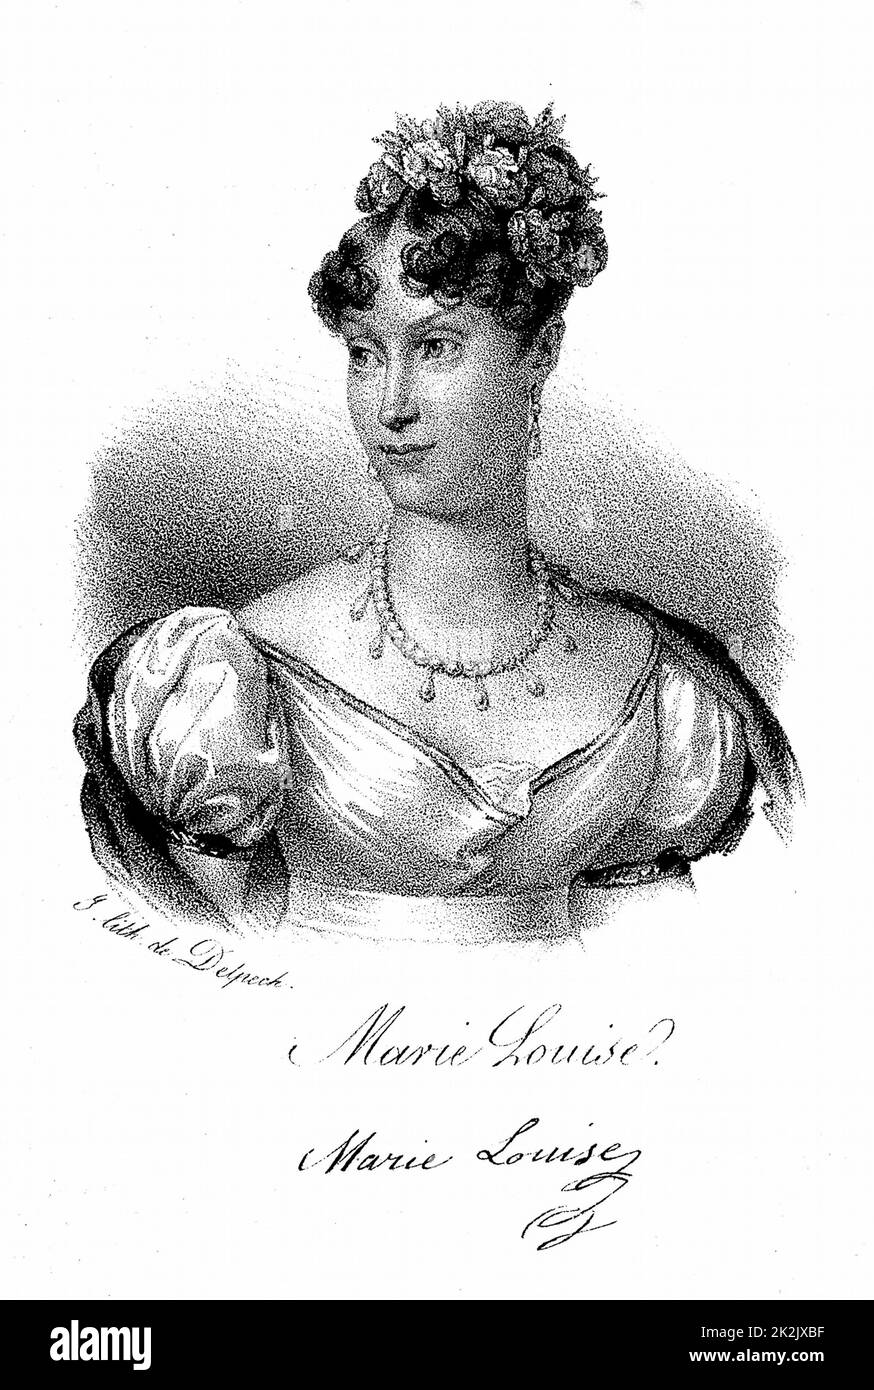 Marie Louise (1791-1847) Kaiserin der Franzosen, Tochter von Franz I. von Österreich. Zweite Ehefrau Napoleons I. von 1810, auf deren Abdankung sie in ihr Land zurückkehrte. Lithographie c1830 Stockfoto